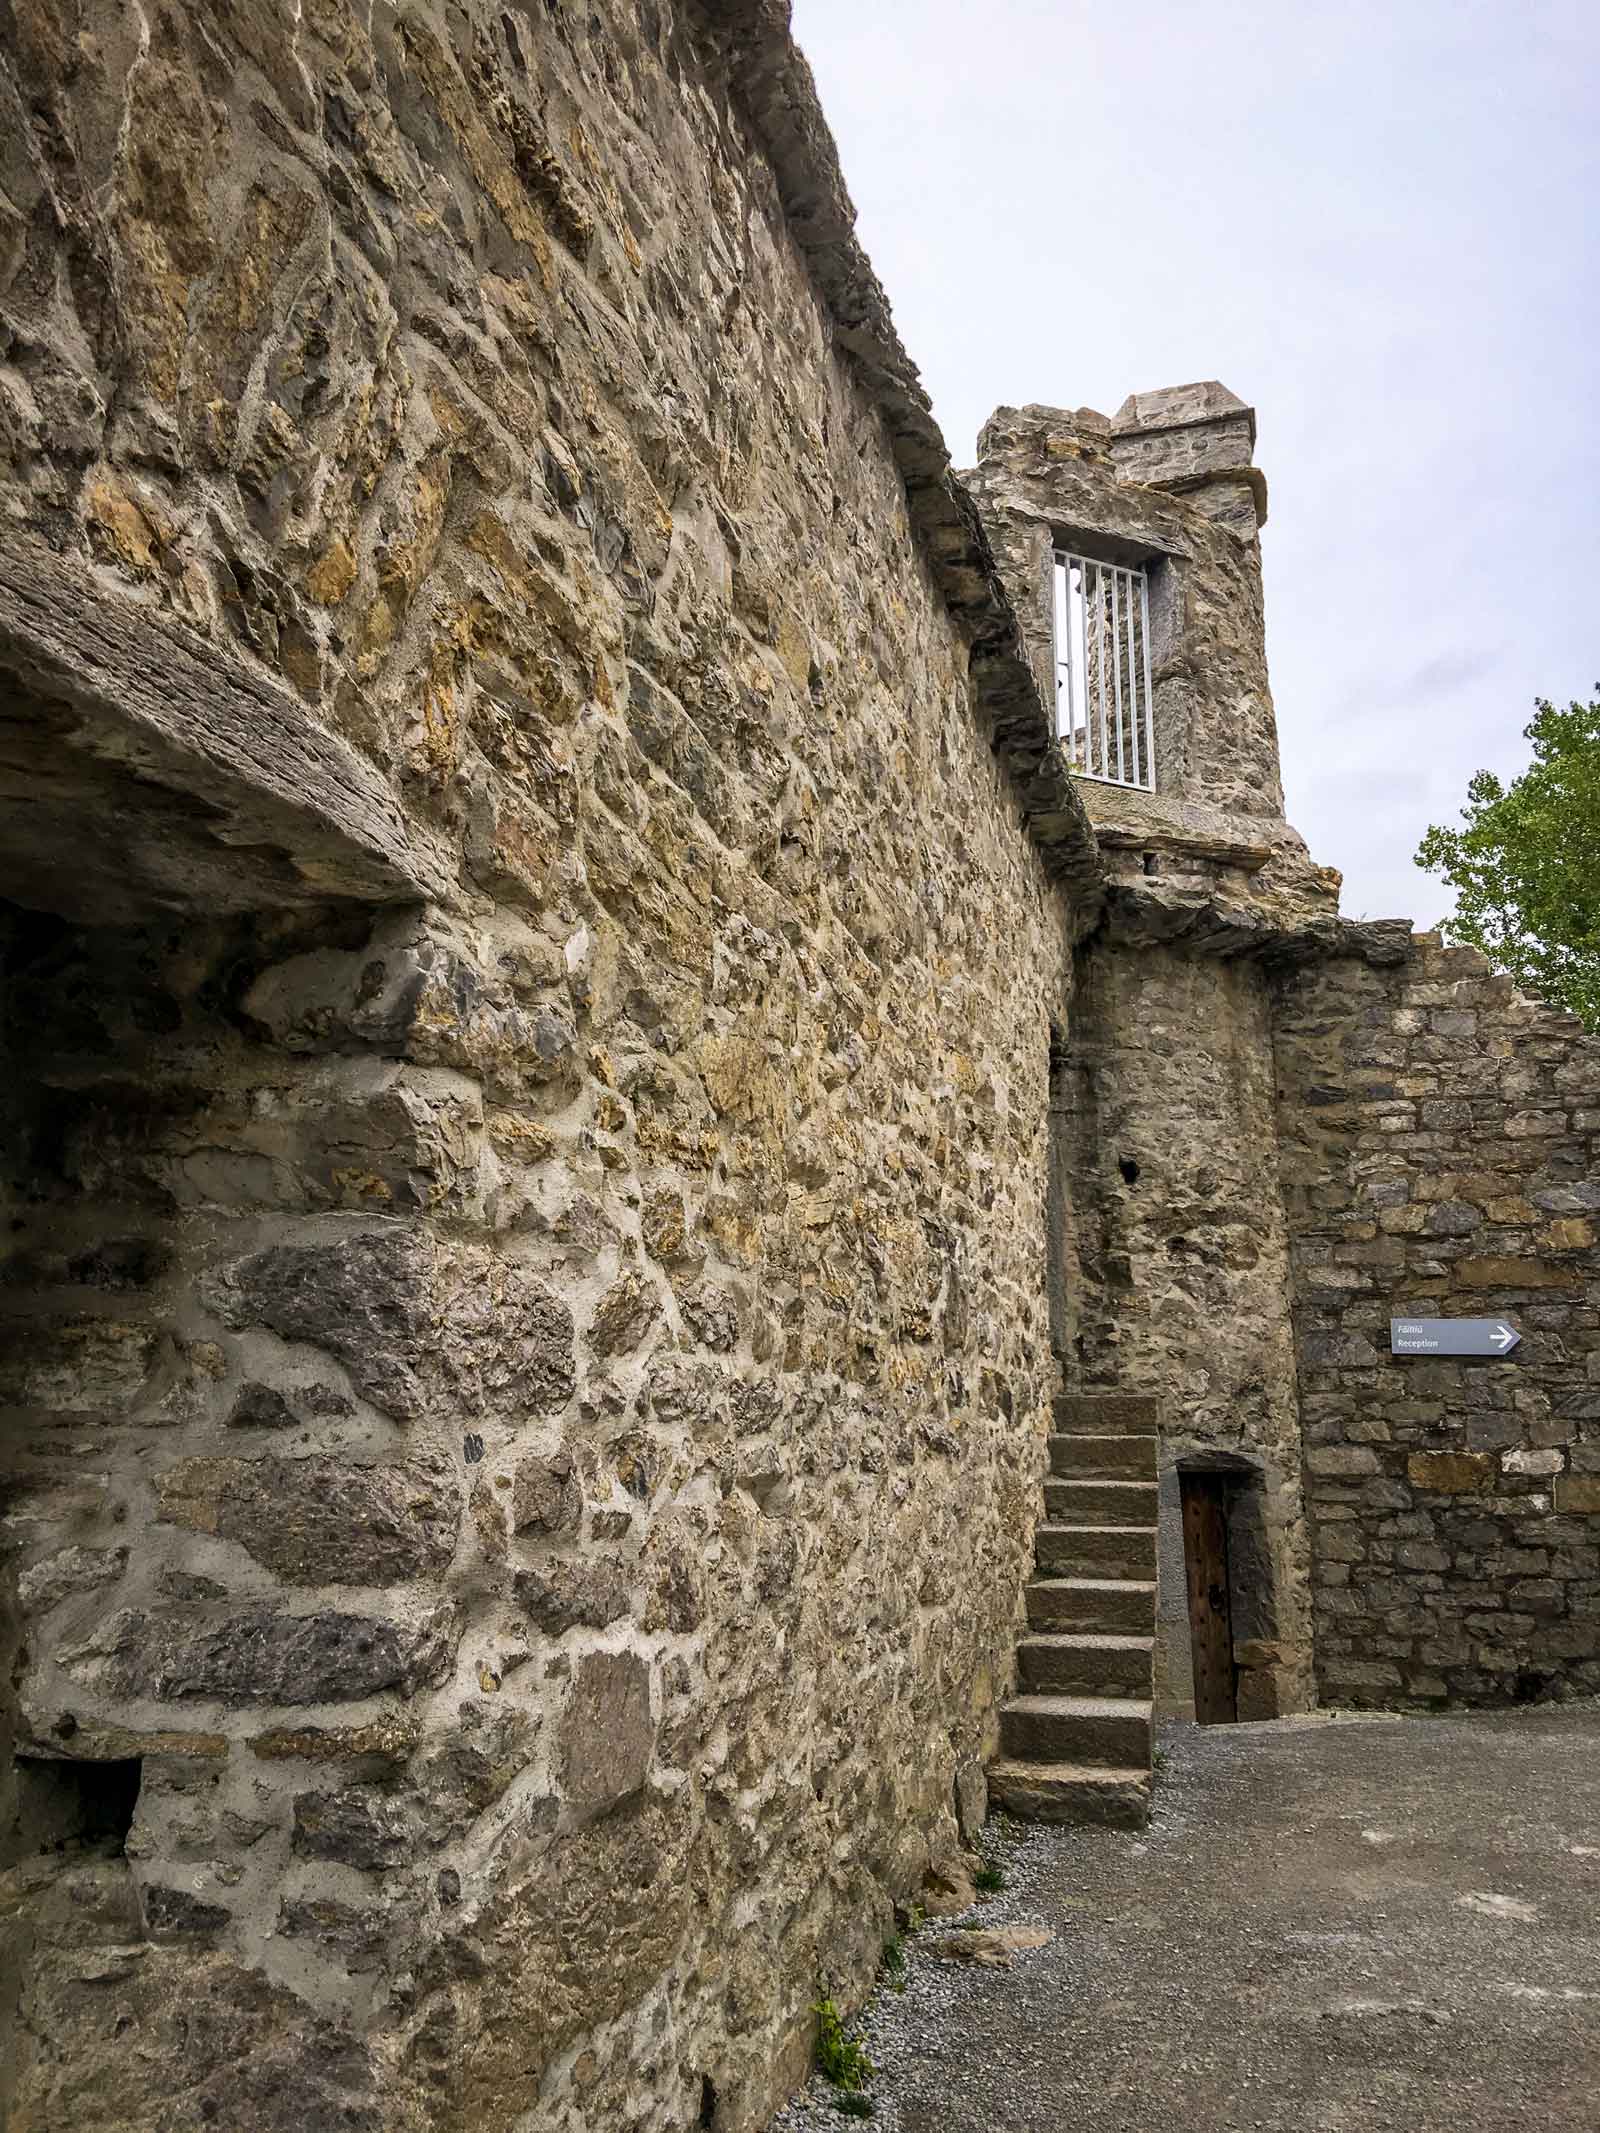 Inside Ross castle in County Kerry